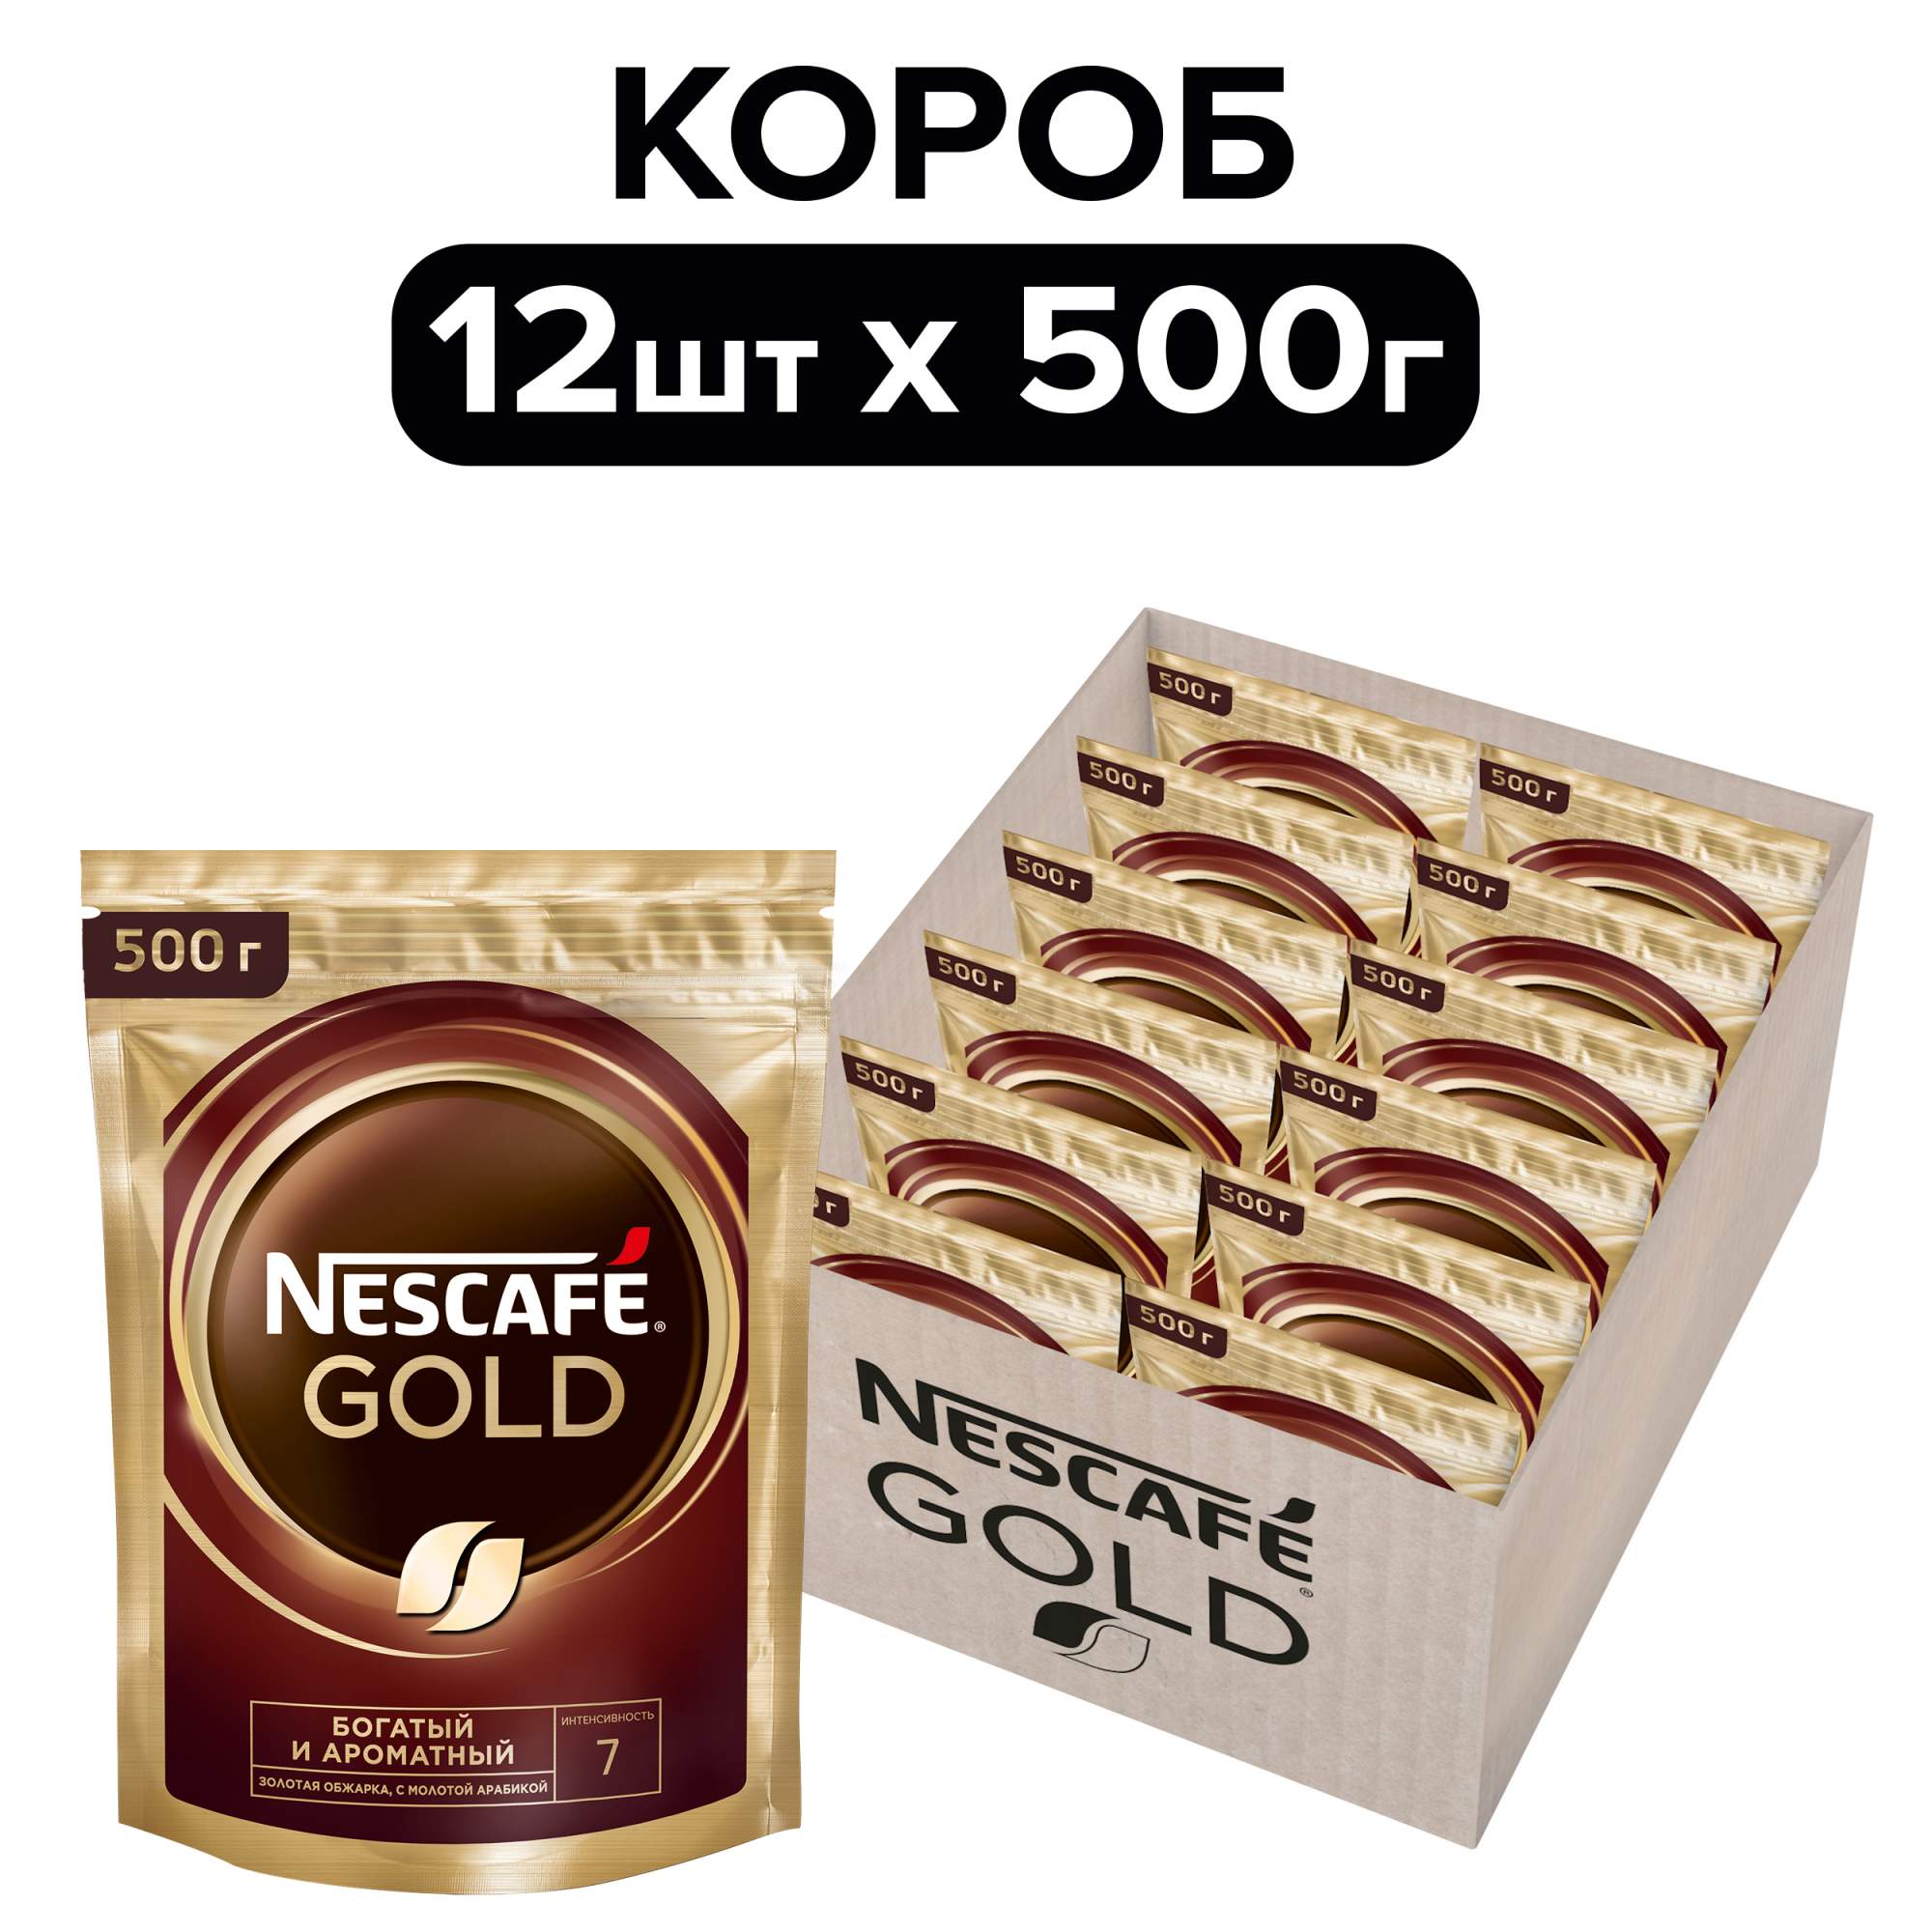 Кофе растворимый Nescafe Gold, 500 г х 12 шт